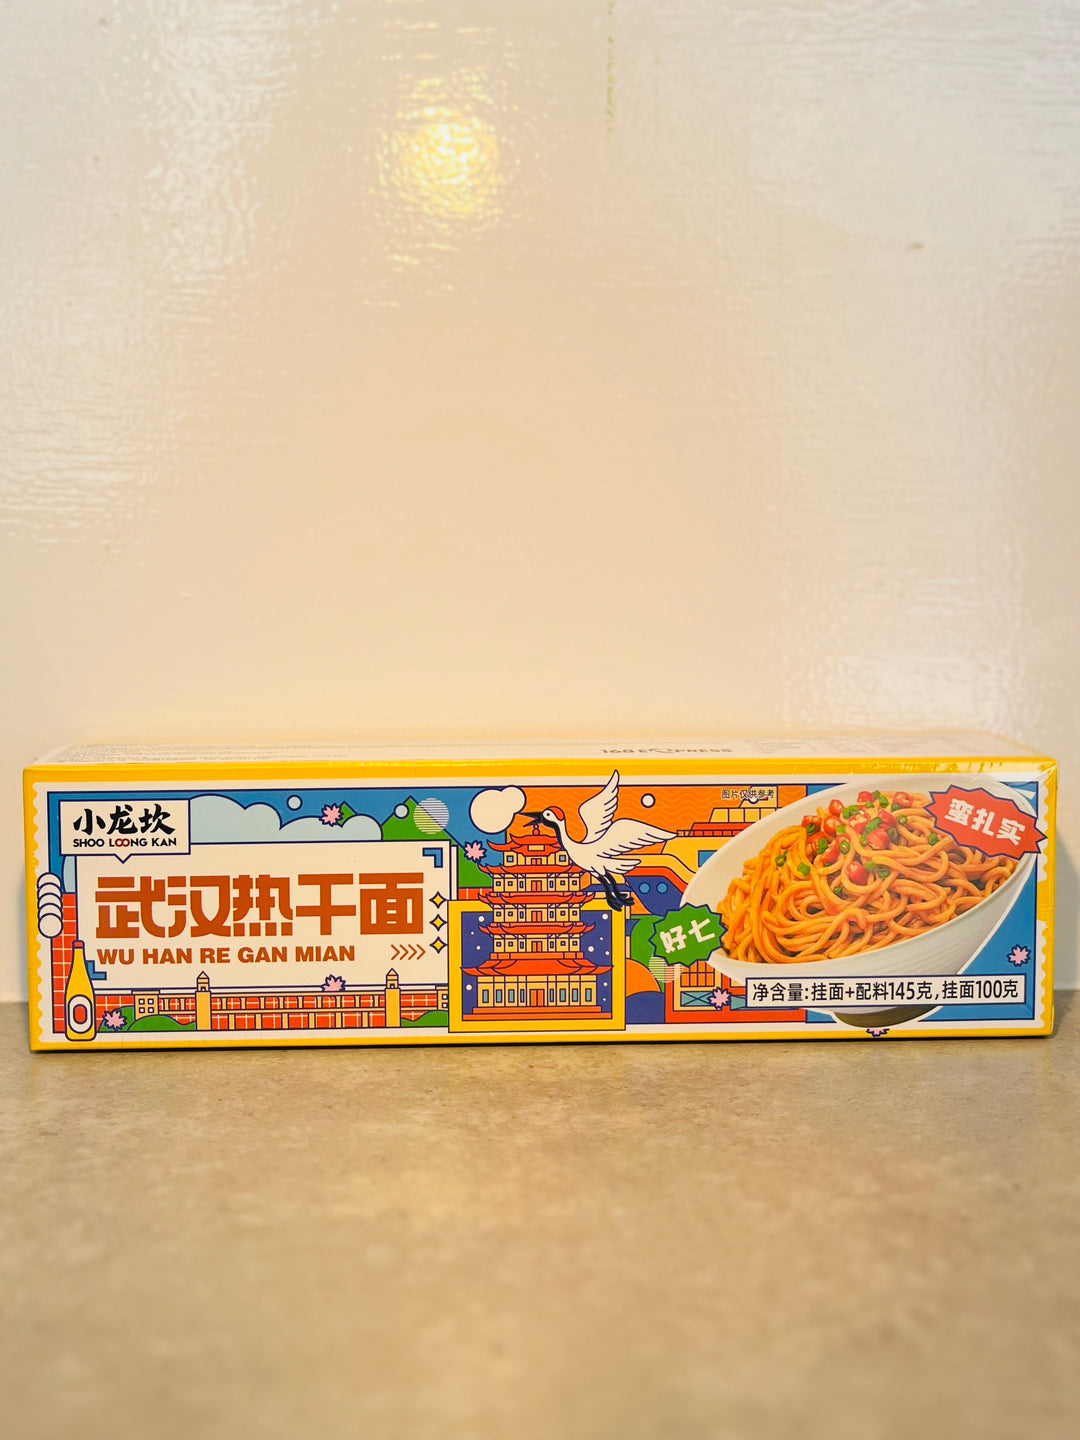 小龙坎武汉热干面145g XLK Sesame Paste Noodle